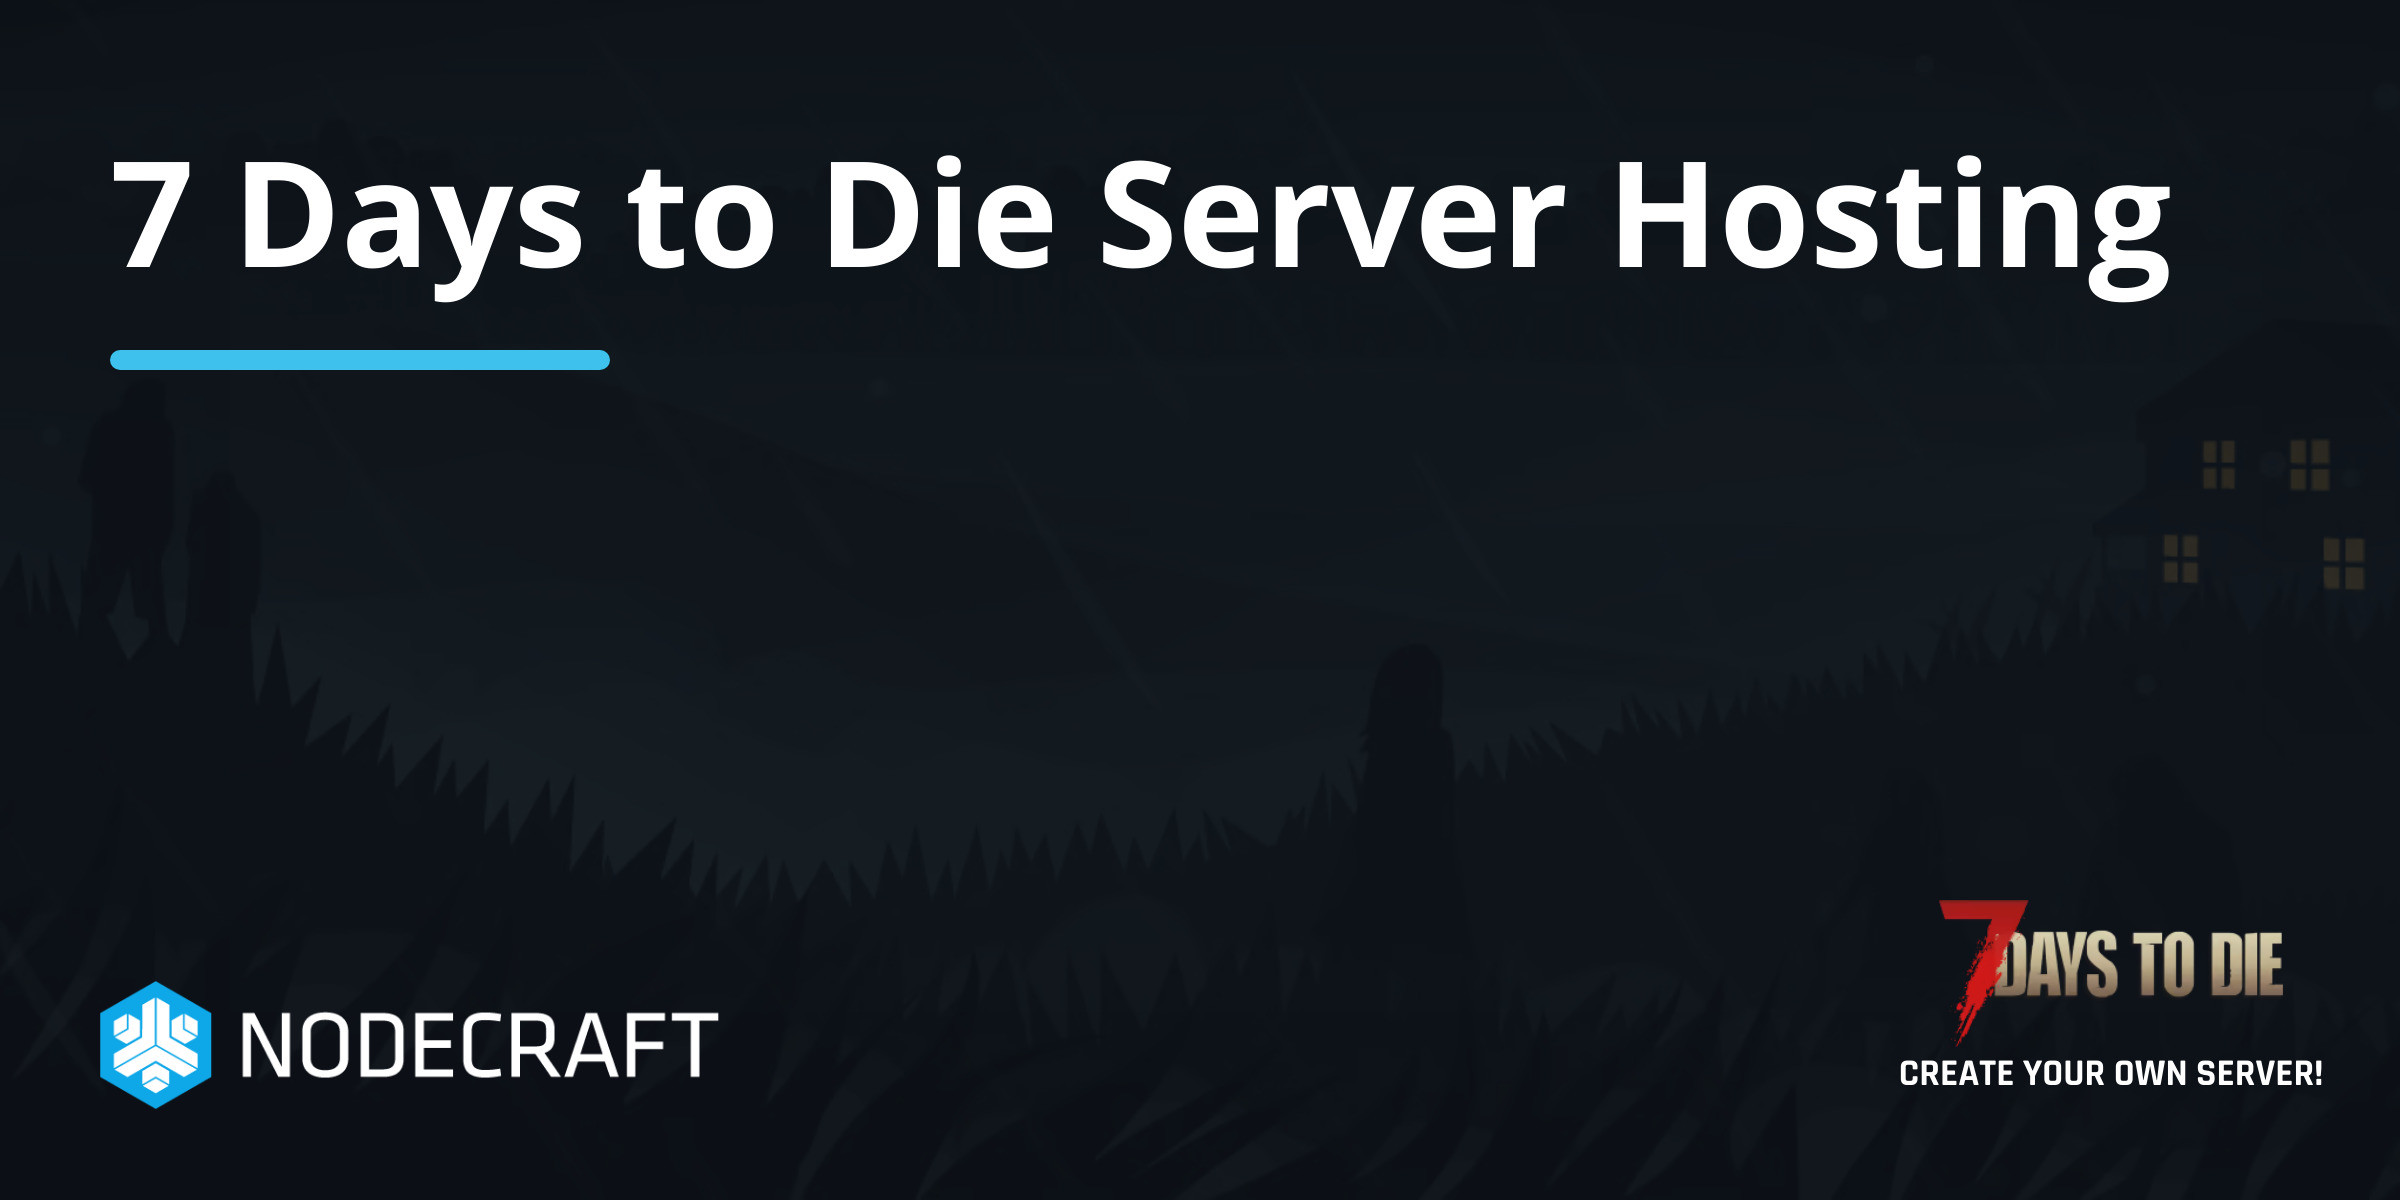 7 Days to Die Server Hosting - Nodecraft